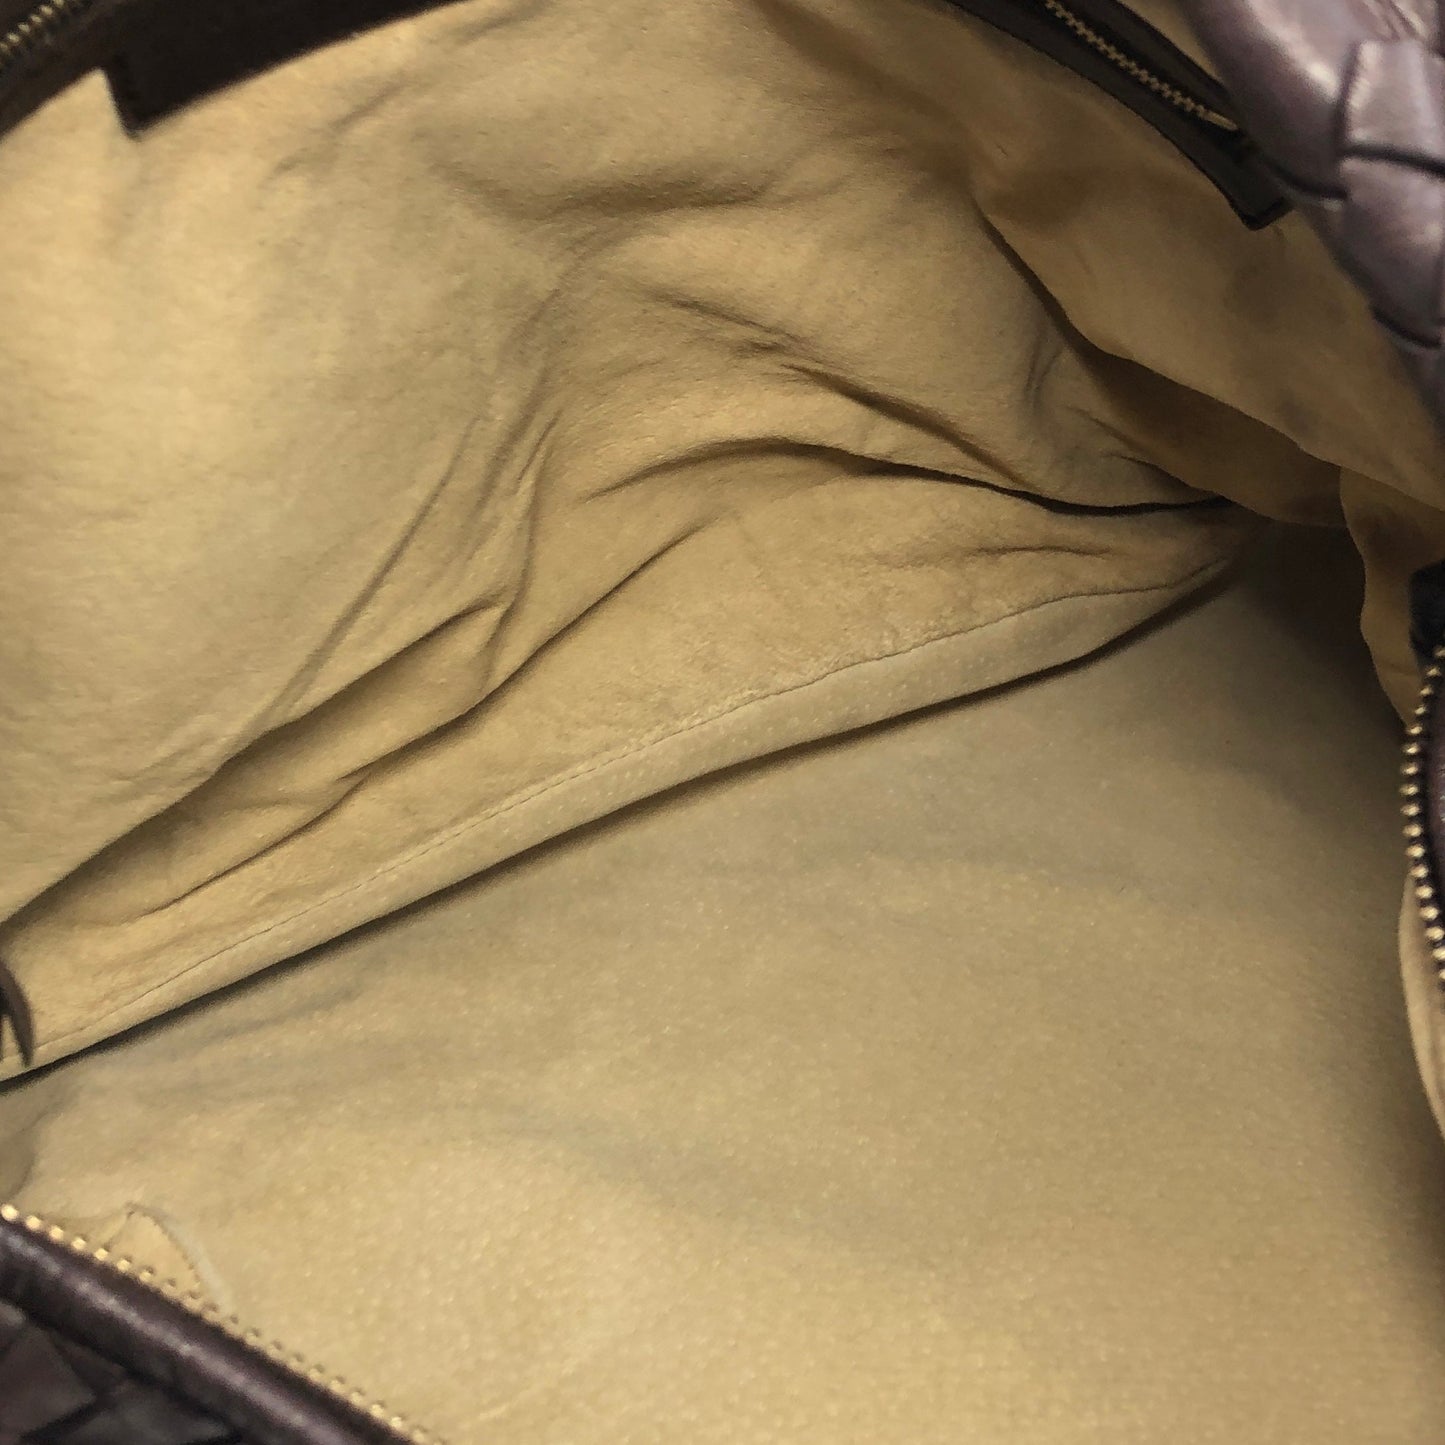 Bottega Veneta Intrecciato Leather Hobo bag Shoulder bag Dark Brown VIntage ffke7u